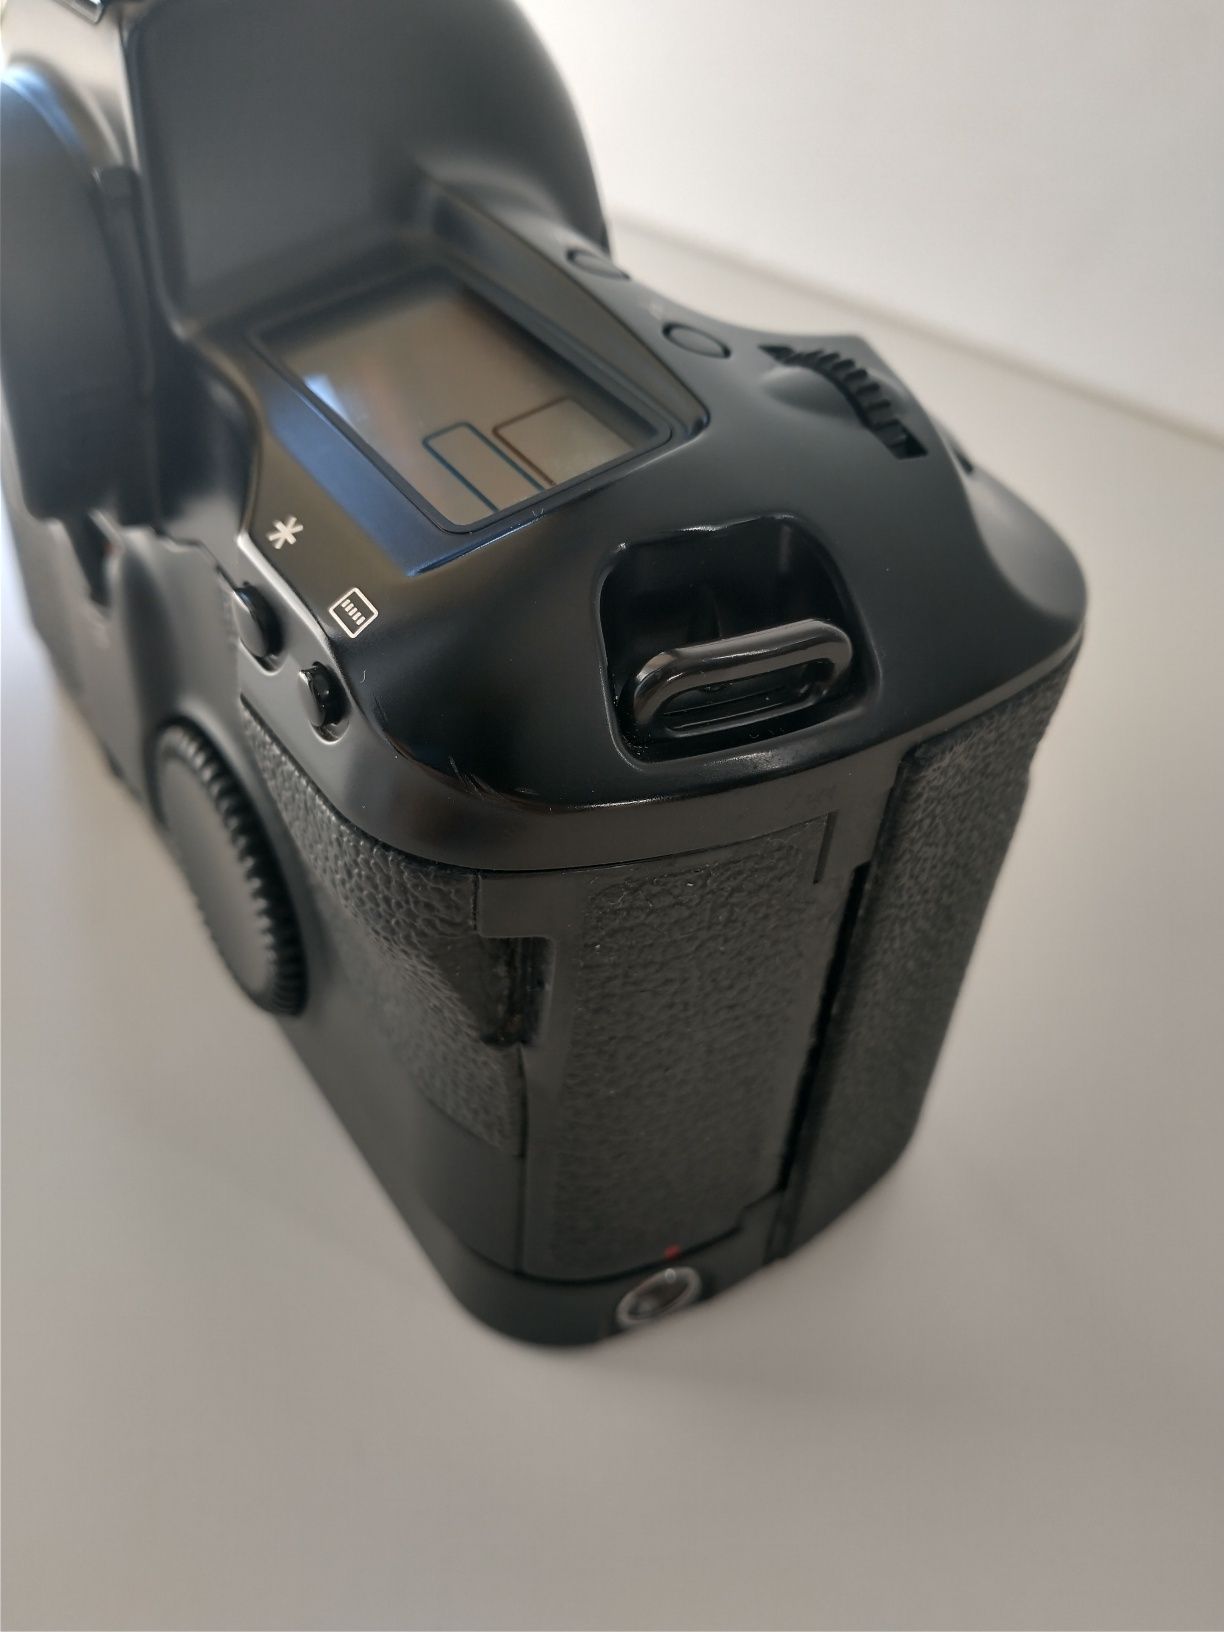 Canon eos 1n - aparat analogowy